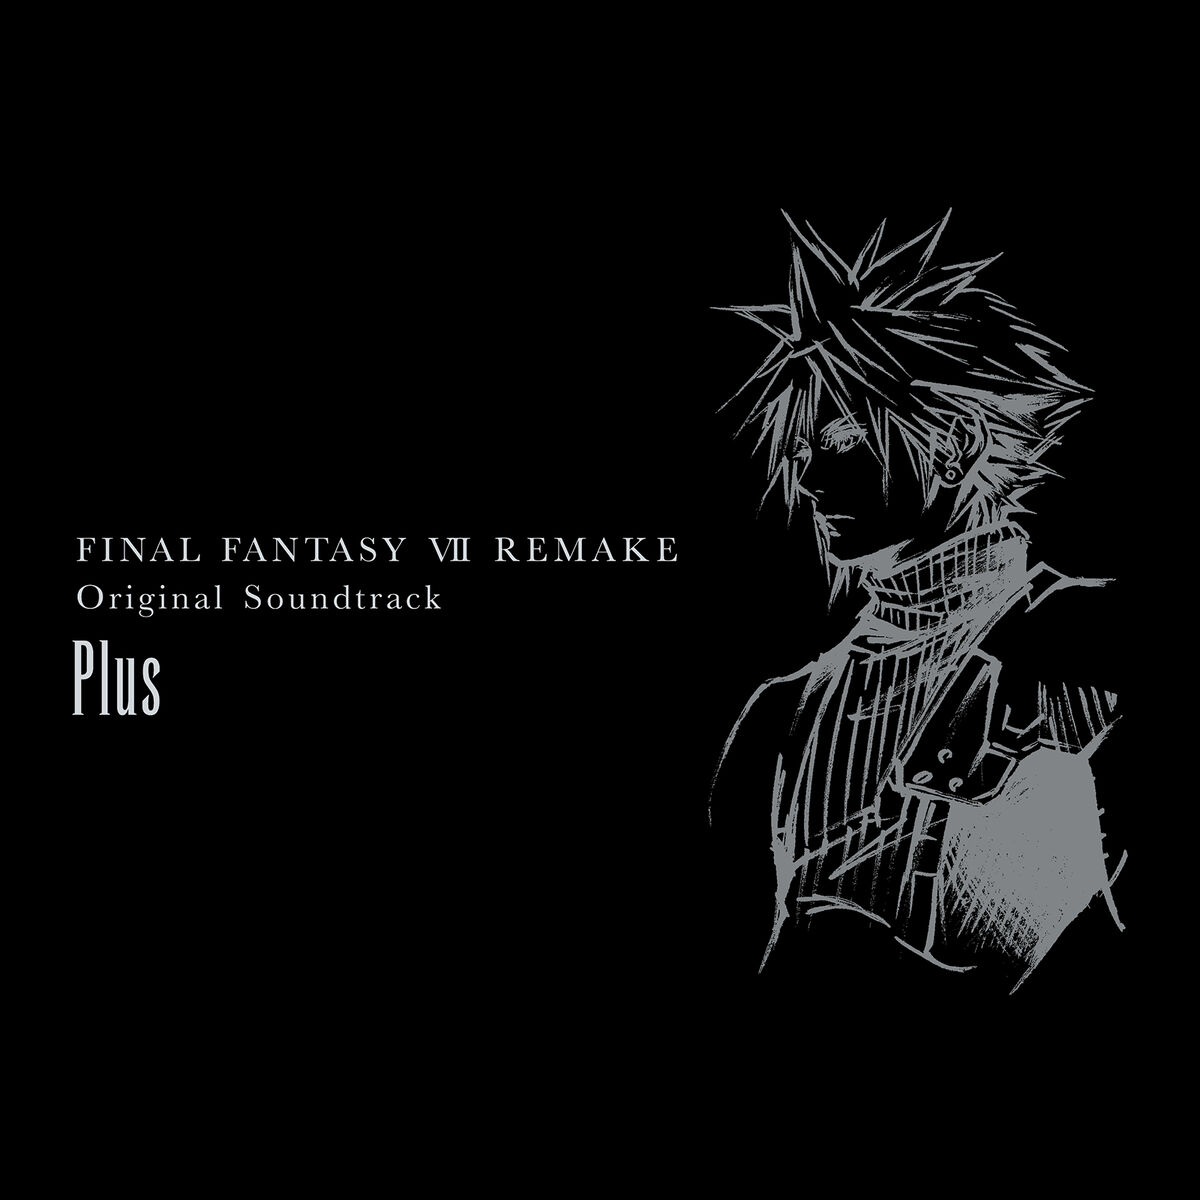 Final Fantasy VII Remake Original Soundtrack Plus - nhạc game Final Fantasy VII Những bản nhạc trong game Final Fantasy VII đã trở nên phổ biến và cực kỳ đáng yêu trong lòng fan hâm mộ. Và giờ đây, với phiên bản mới nhất - Final Fantasy VII Remake Original Soundtrack Plus, những ca khúc đỉnh cao này đã được cập nhật và phát triển thêm. Hãy lắng nghe và thưởng thức những giai điệu đầy cảm xúc, tạo nên một thế giới anime đầy phù phép.